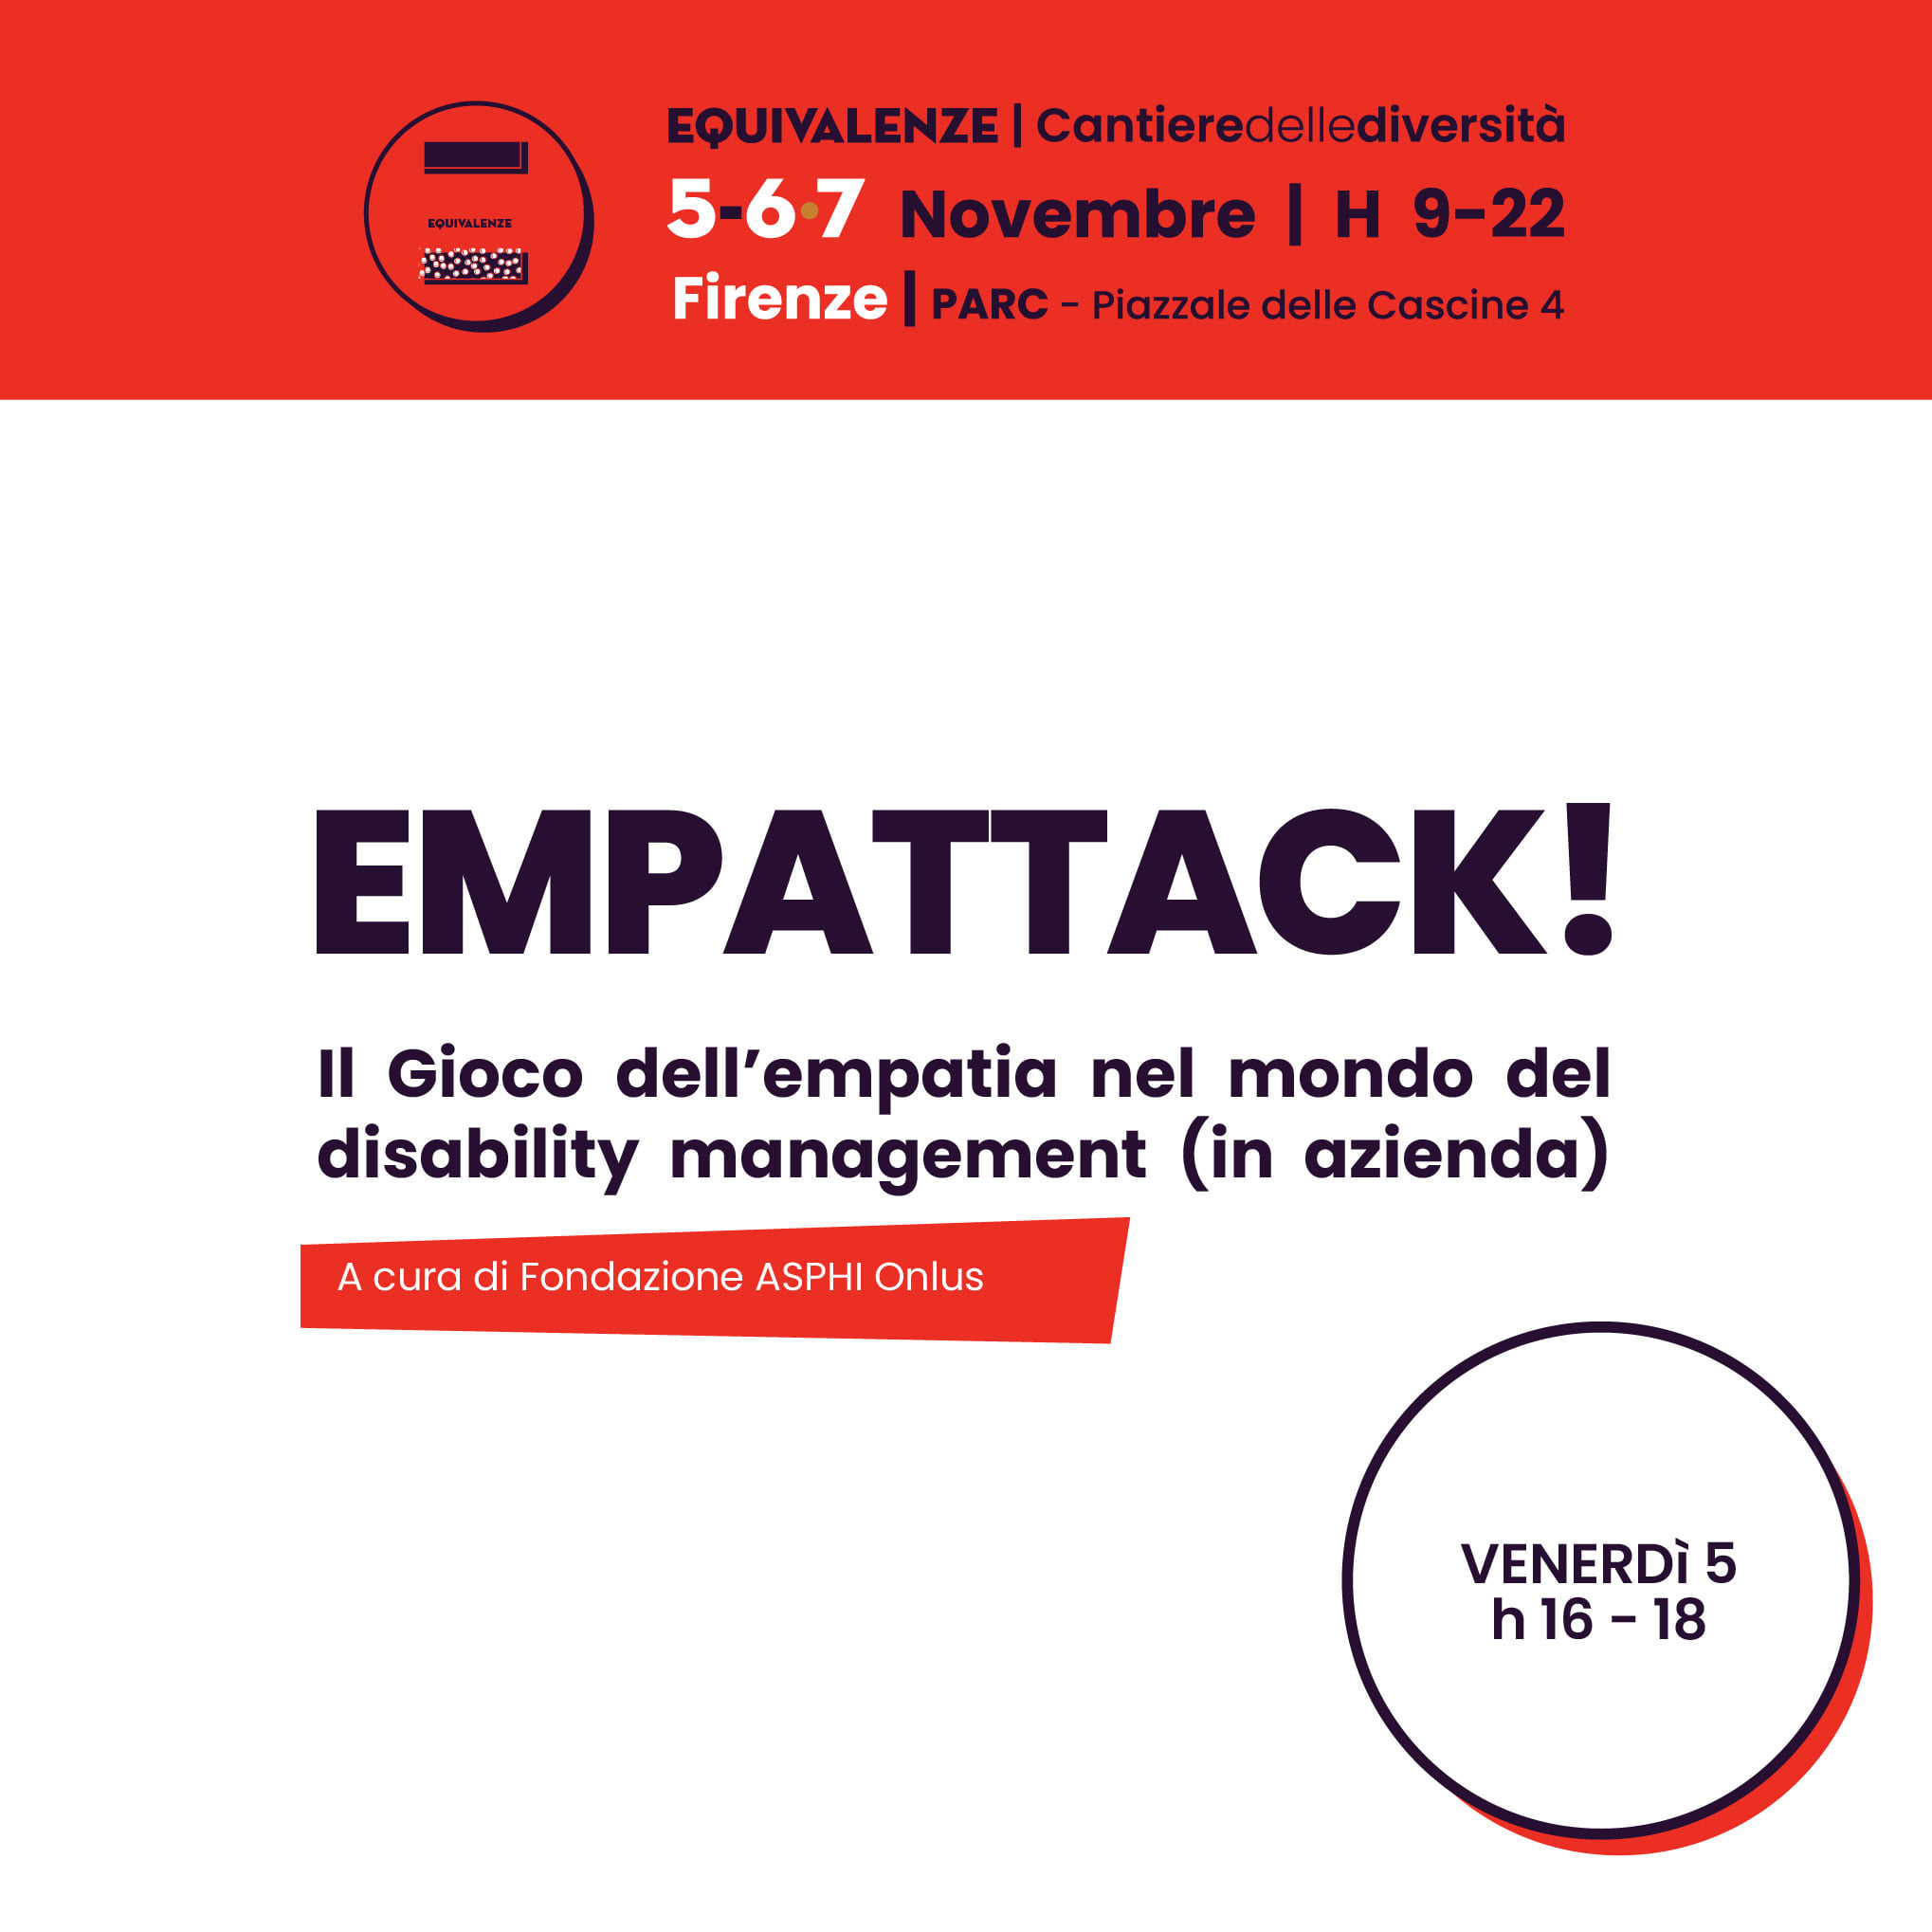 Empattack! il gioco collaborativo del disability management in azienda